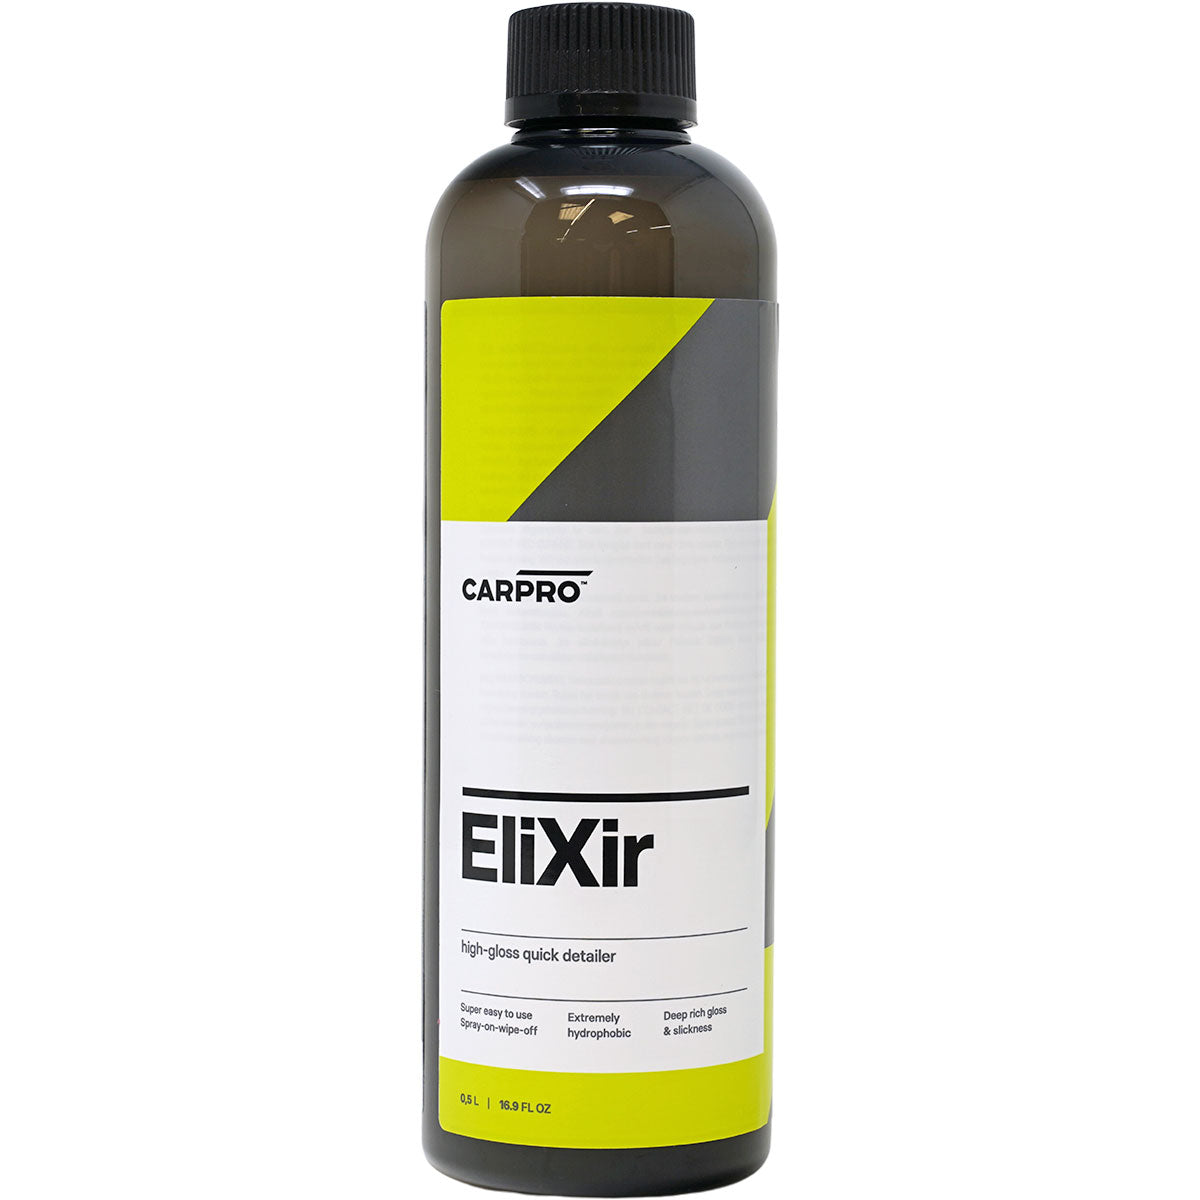 CarPro - Elixir High Gloss Quick Detailer